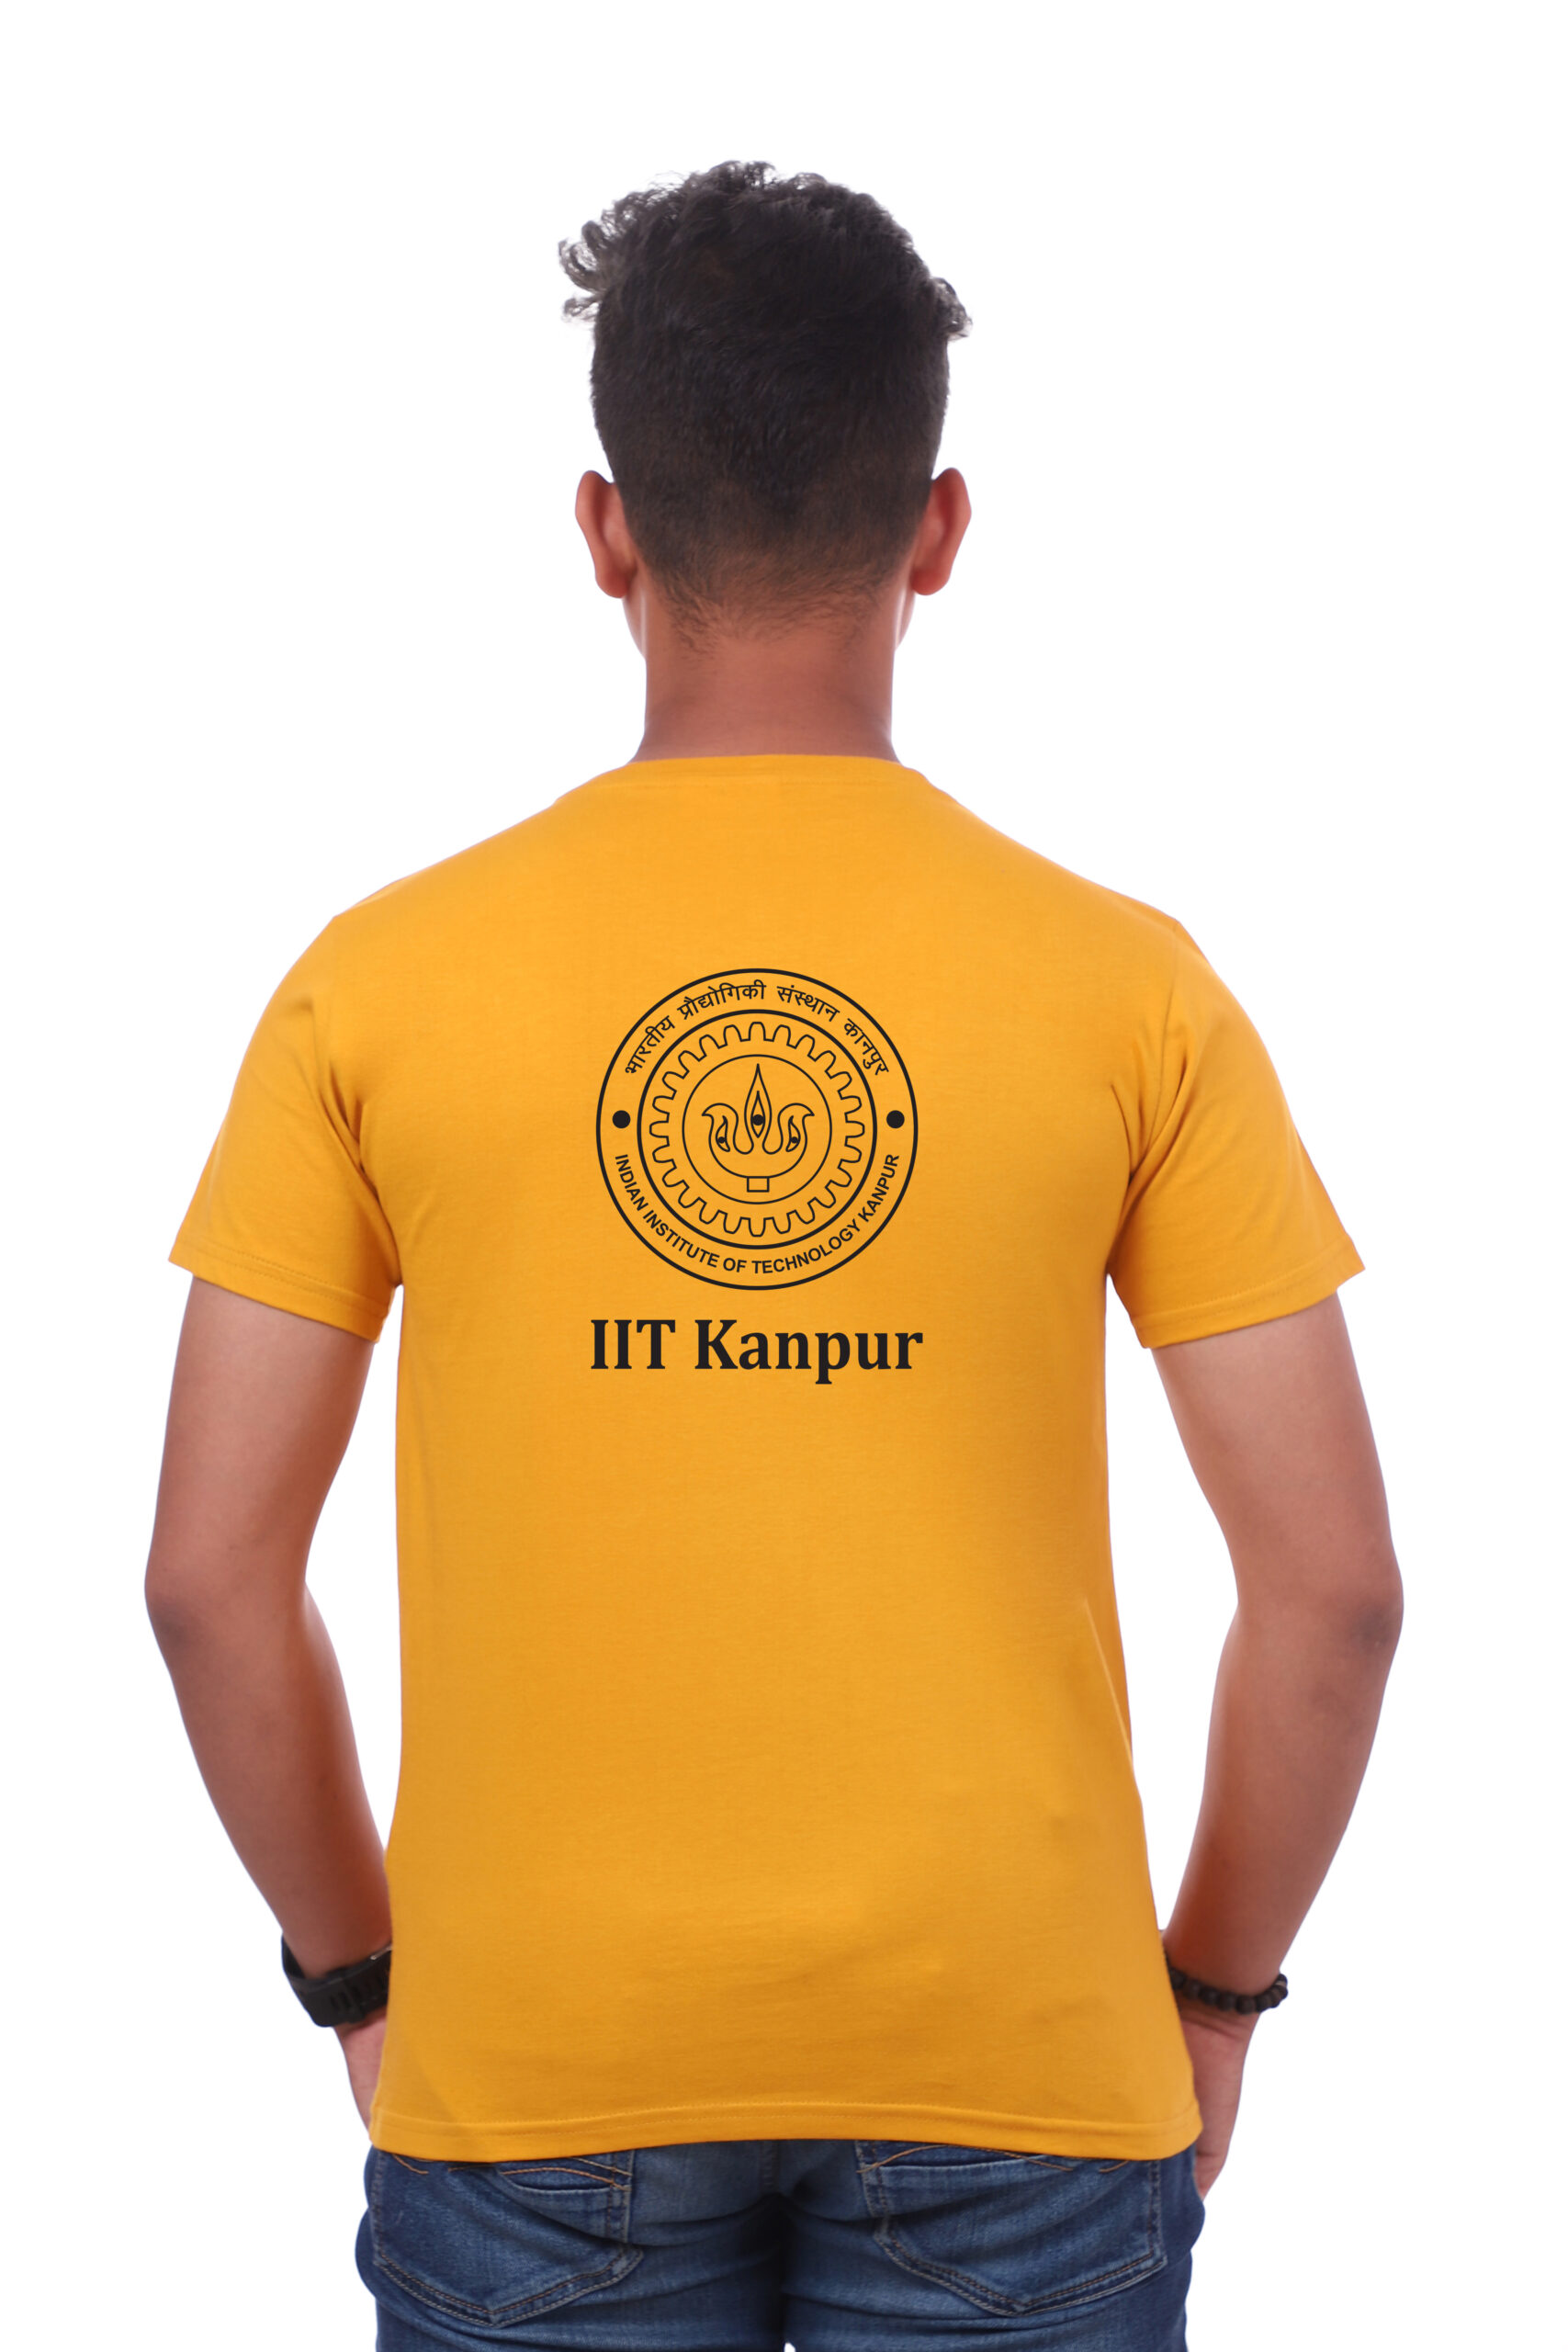 IITK Alumni Assoc. Silicon Valley Chapter - Alumni Association, Silicon  Valley Chapter - IIT Kanpur | LinkedIn